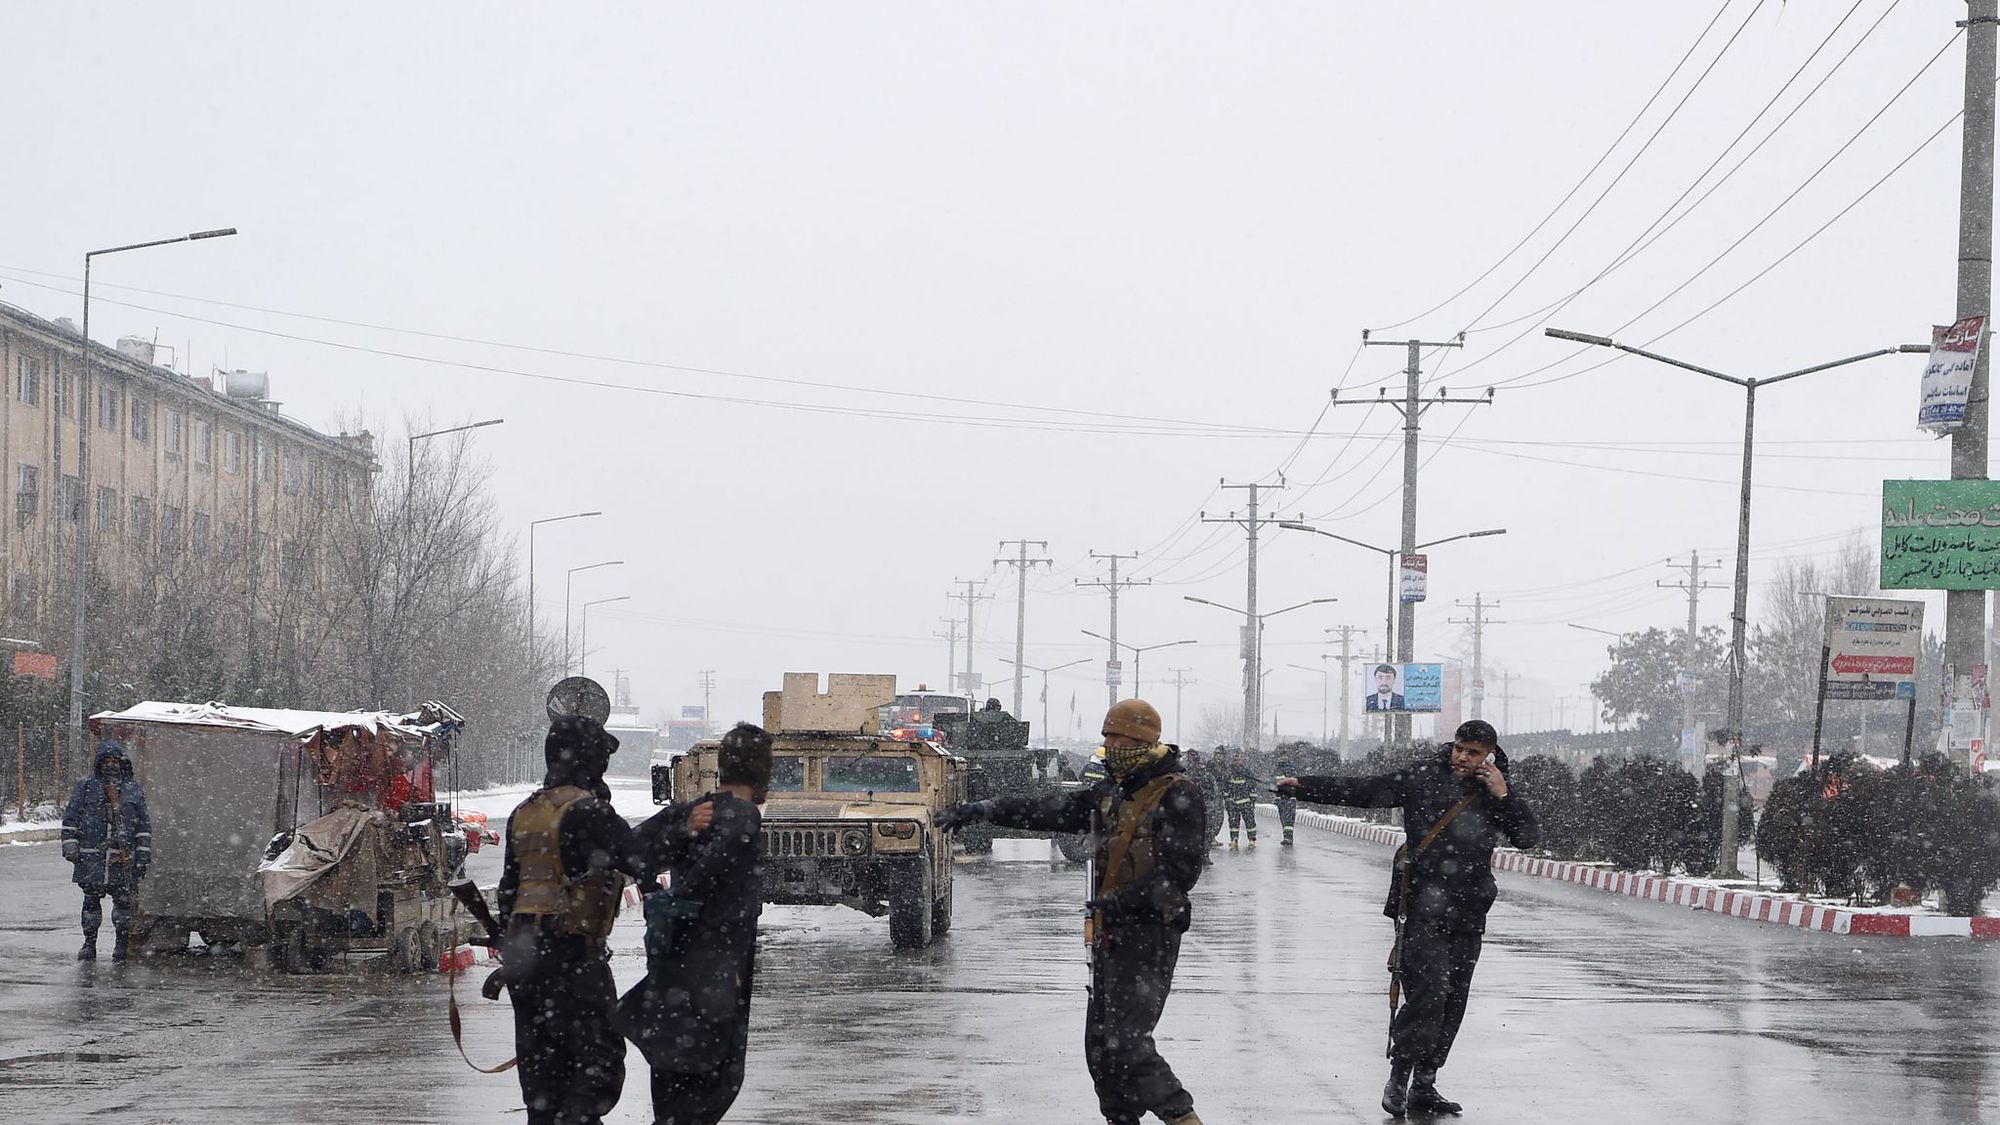 Kaboul sous haute tension après l'attaque d'une académie militaire - L'Express